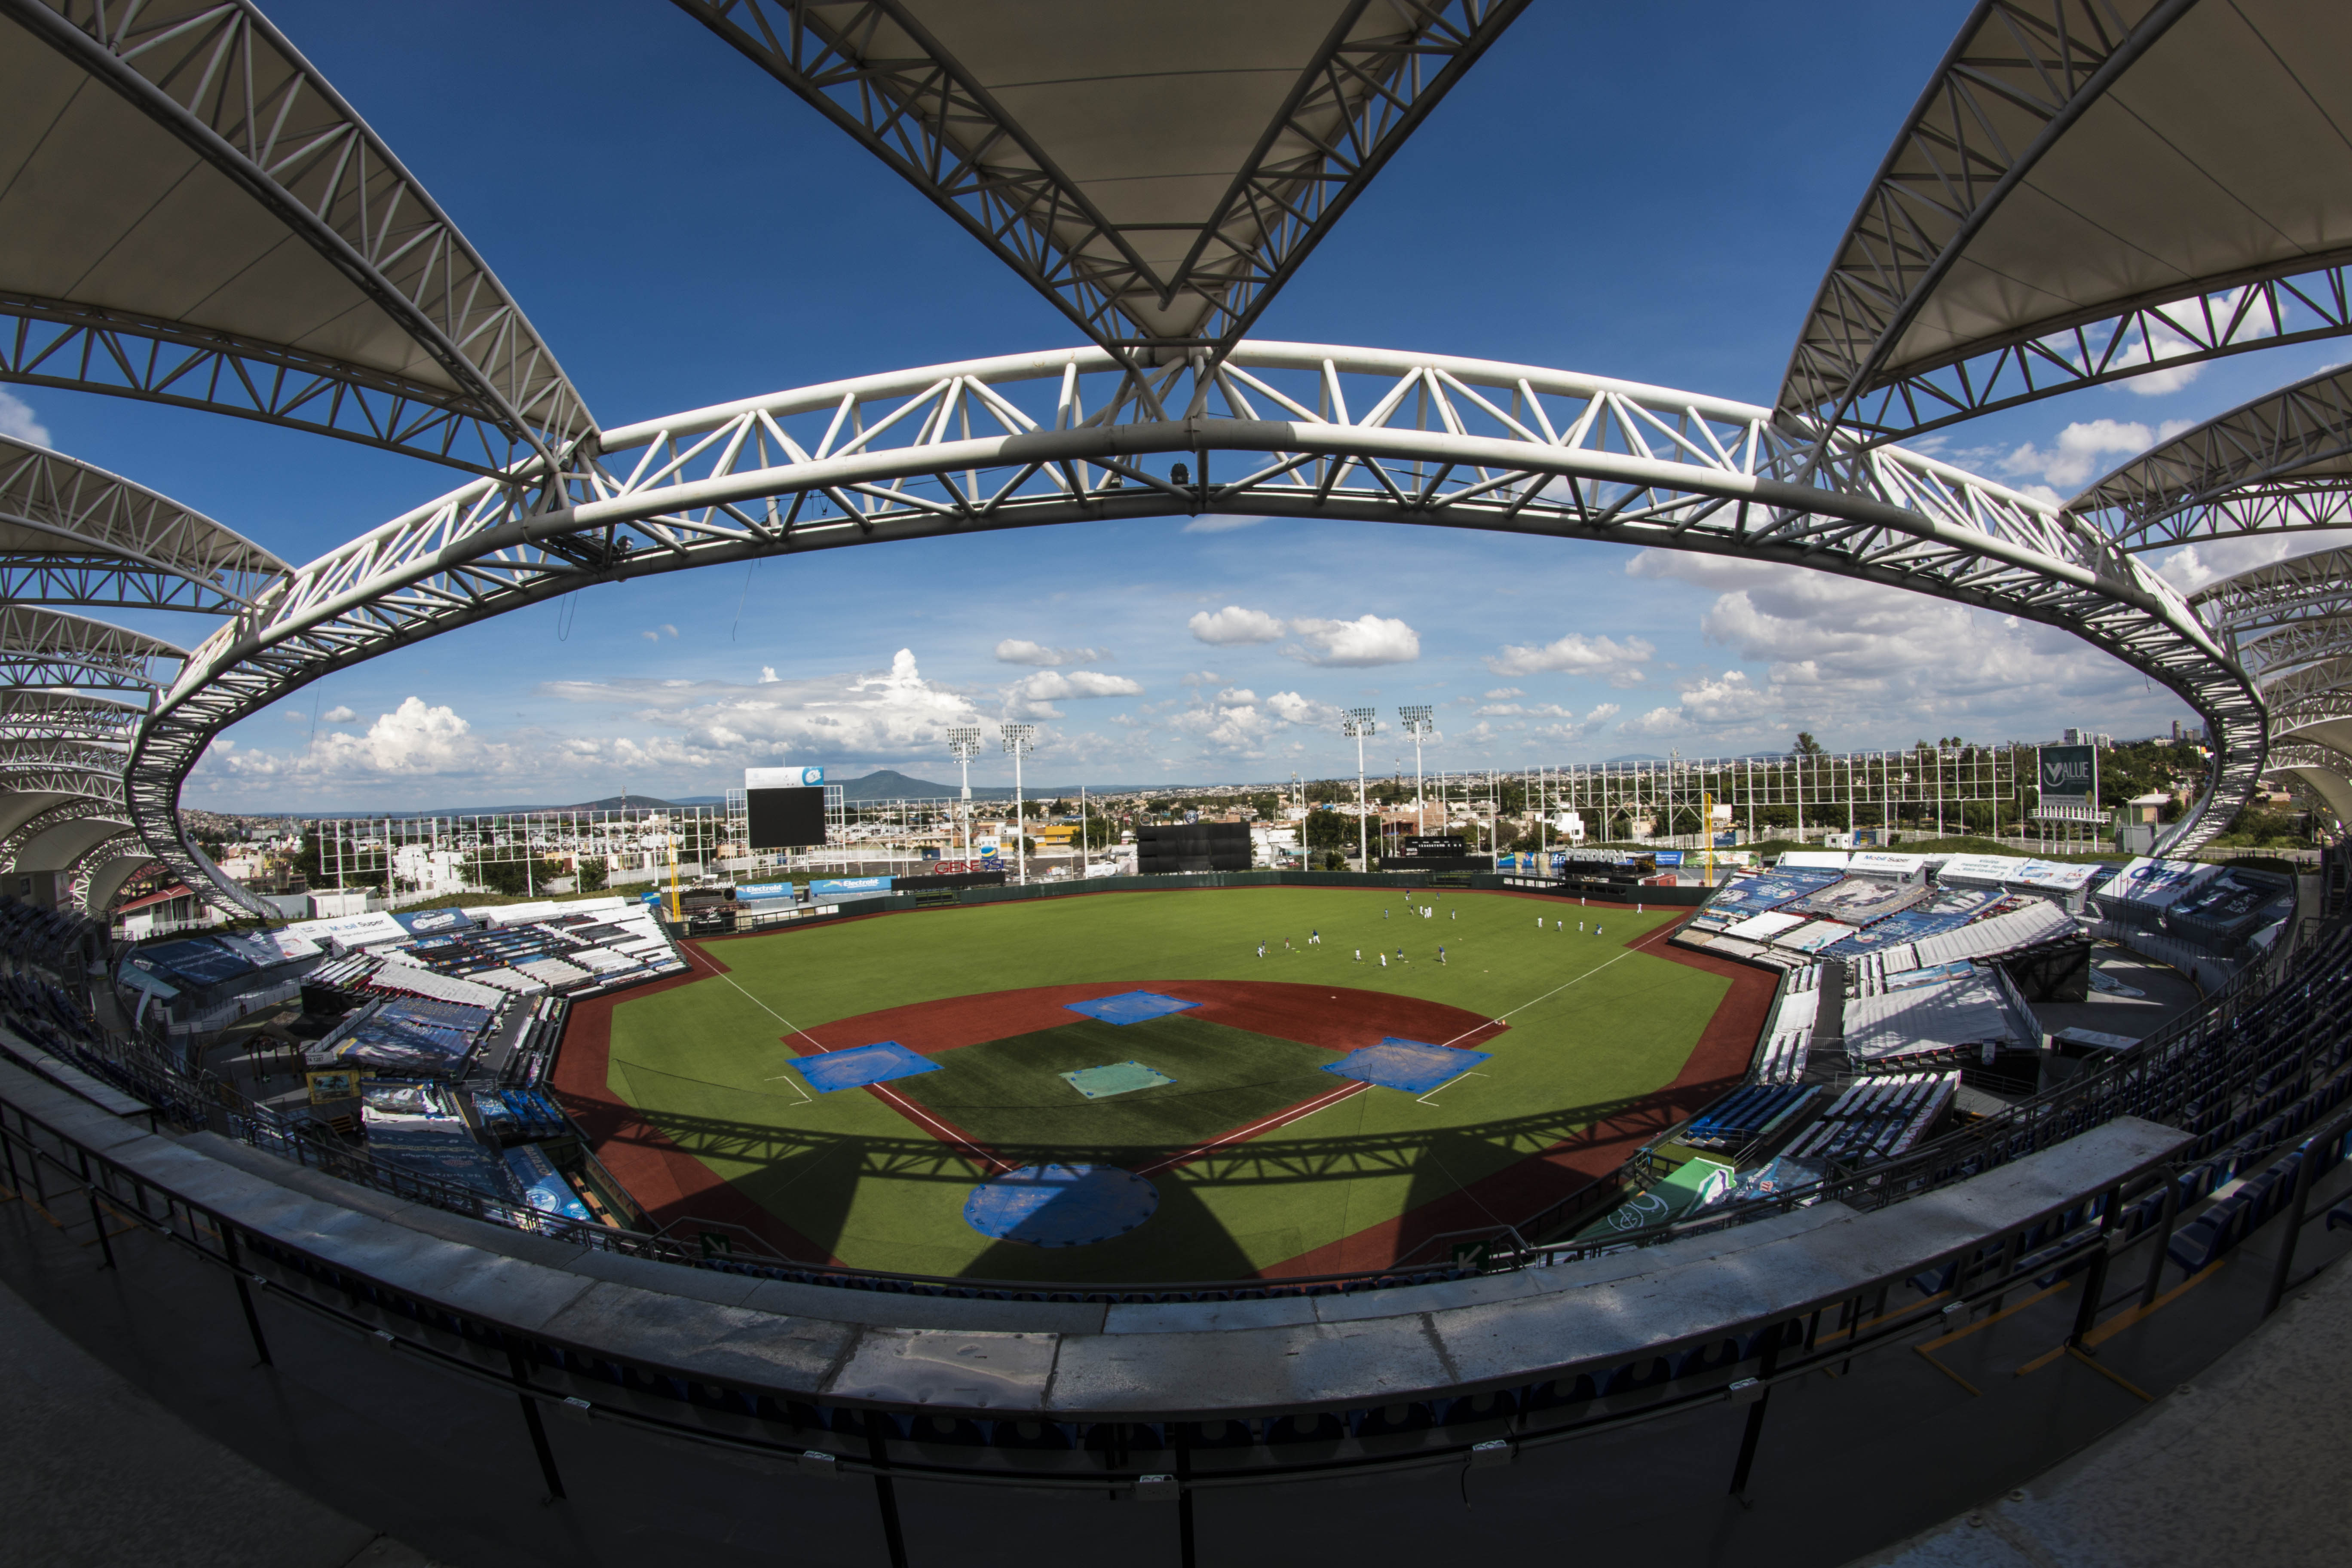 Estadio de Beisbol Charros de Jalisco - All You Need to Know